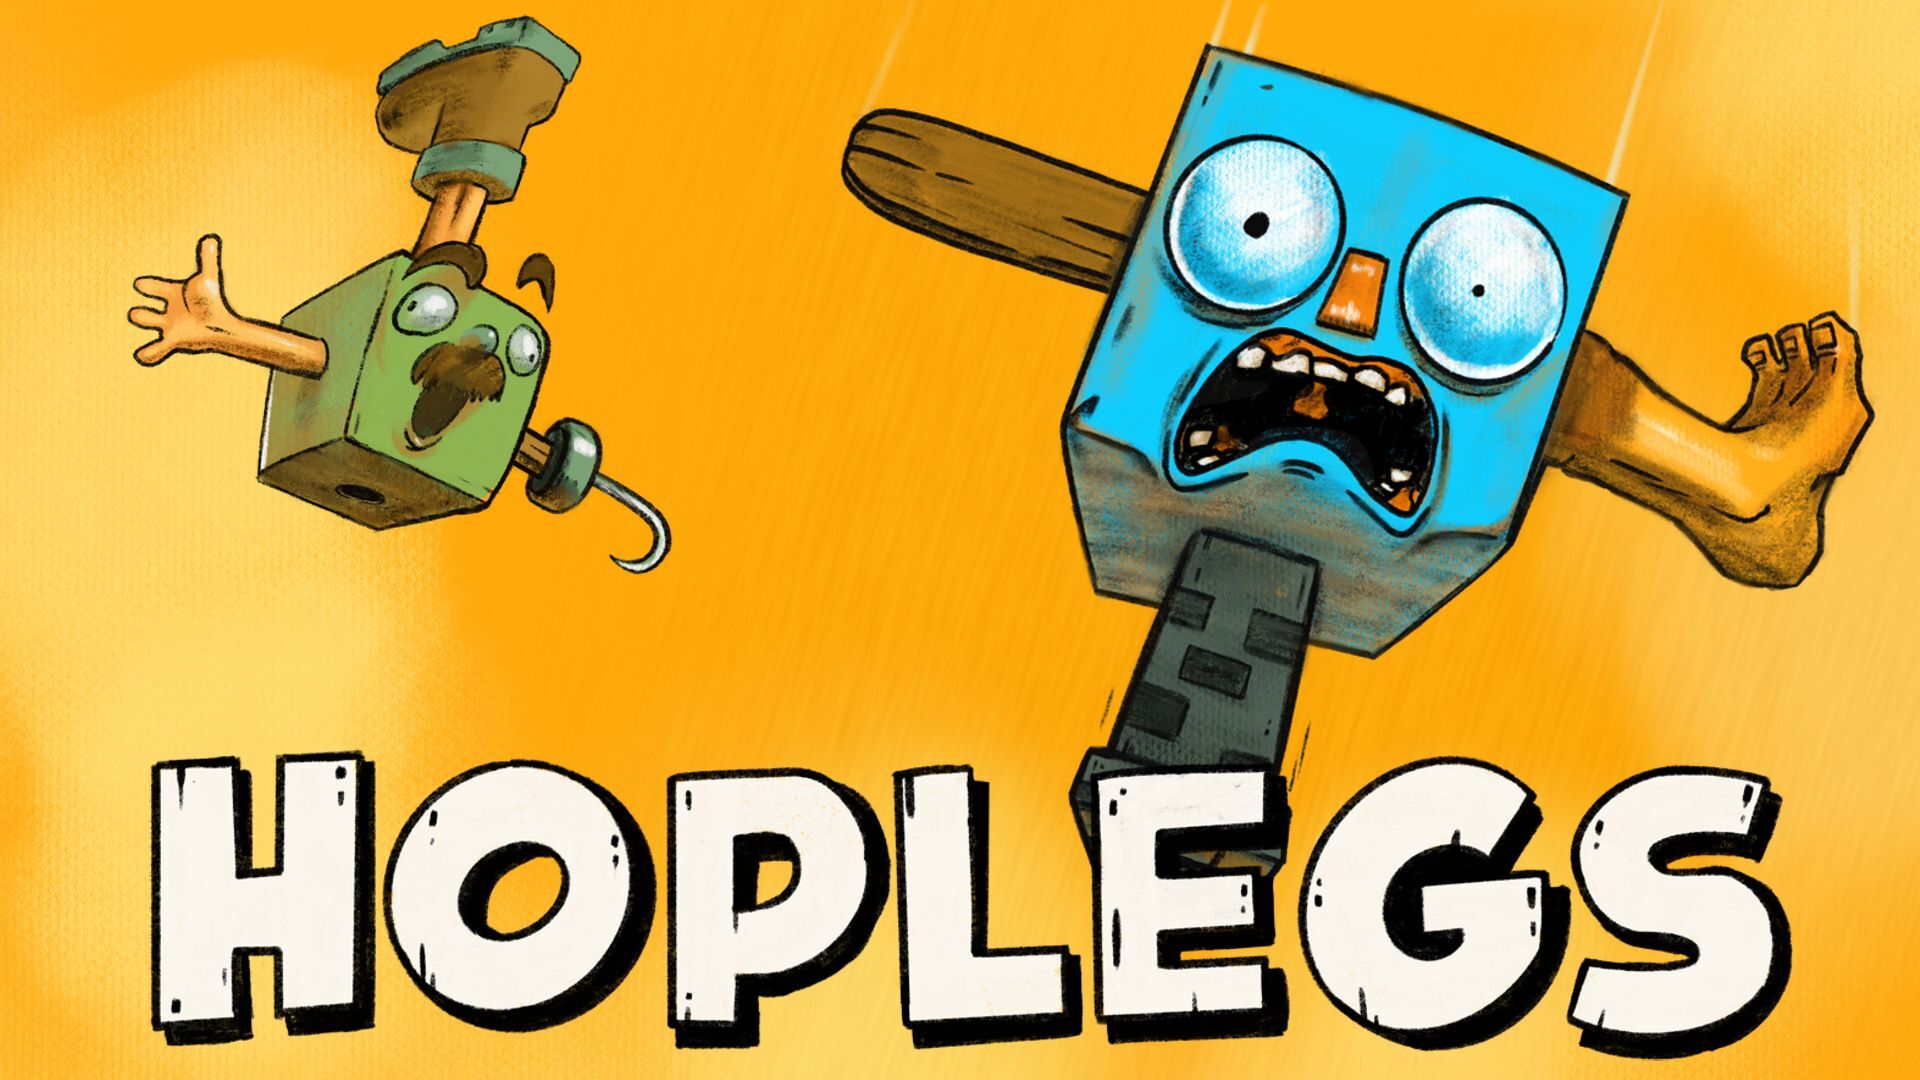 Hoplegs - Metacritic